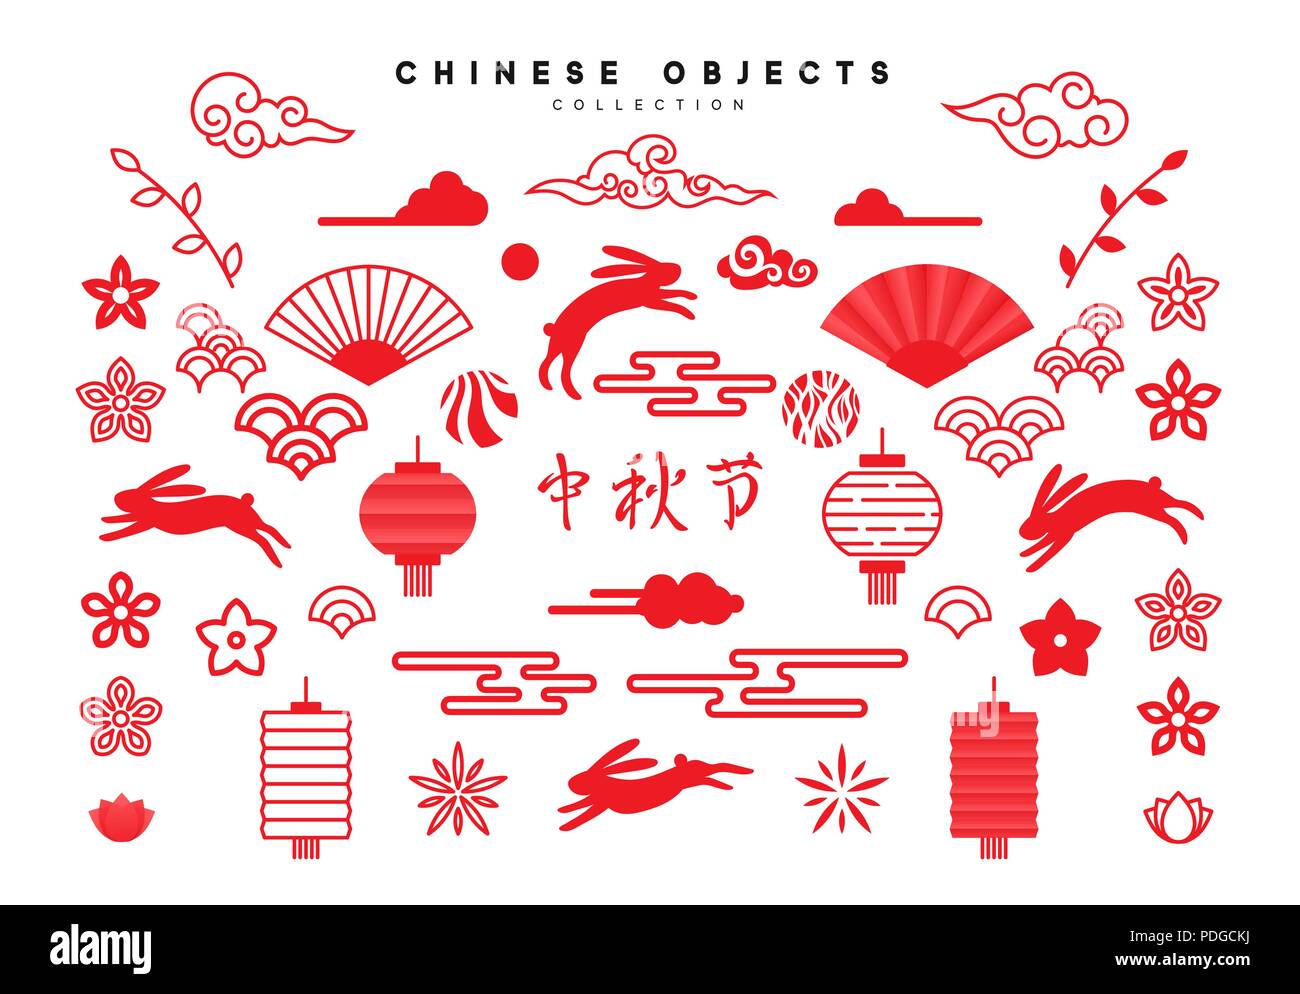 Traditionelle Chinesische Gestaltungselemente für Urlaub, Mid Autumn  Festival. Sammlung von Objekten in roten Farben auf weißem Hintergrund  Stock-Vektorgrafik - Alamy